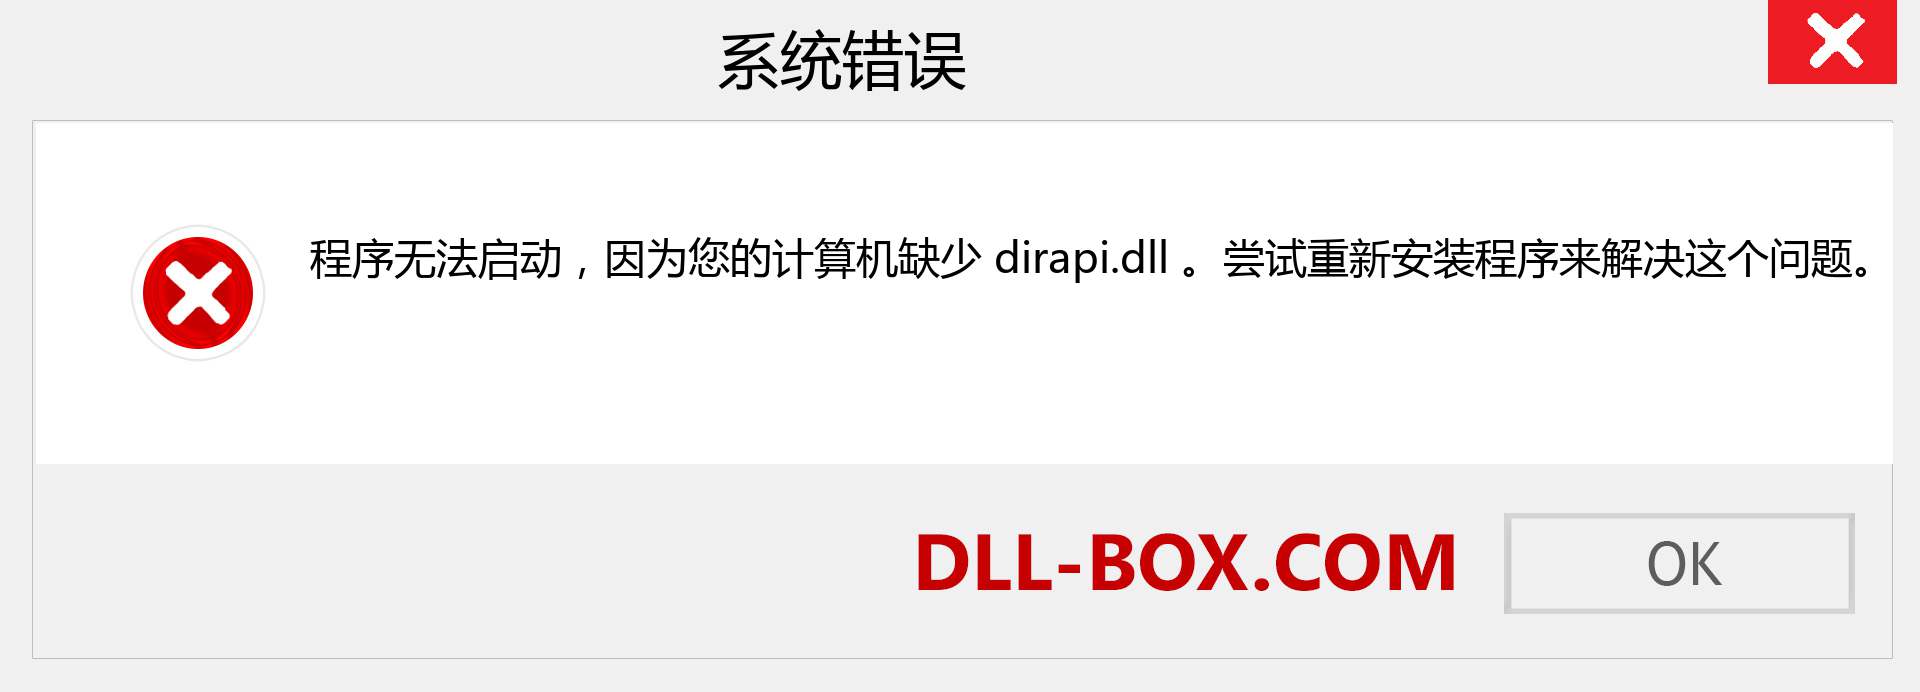 dirapi.dll 文件丢失？。 适用于 Windows 7、8、10 的下载 - 修复 Windows、照片、图像上的 dirapi dll 丢失错误